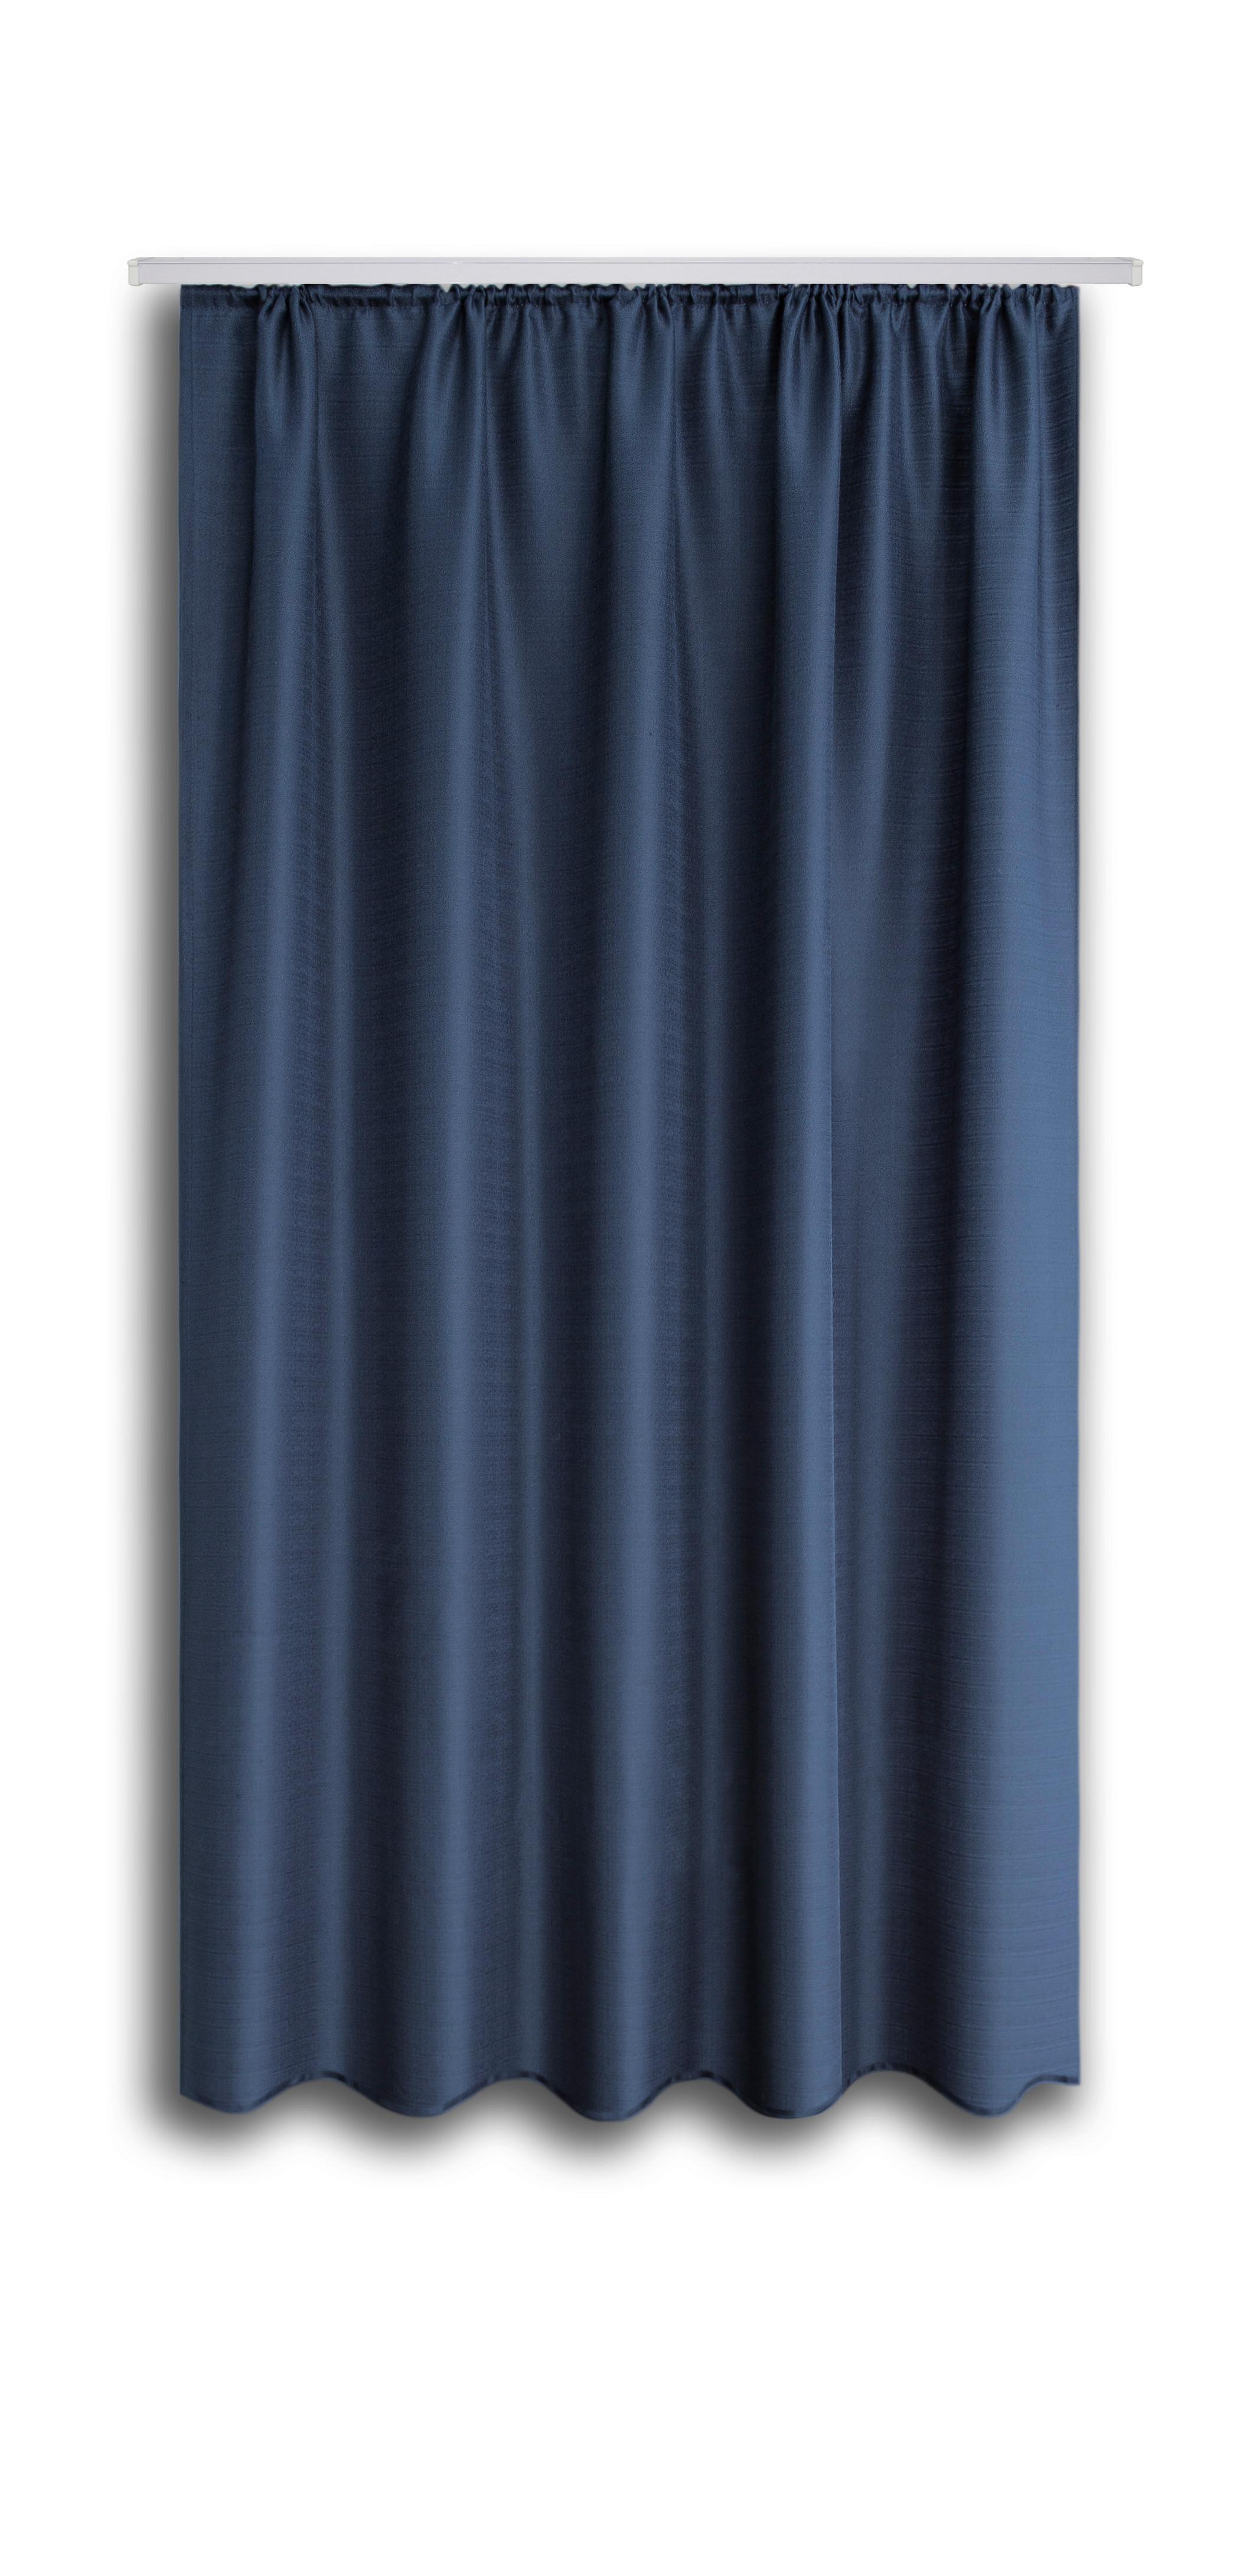 Készfüggöny Ben Ii - Kék, konvencionális, Textil (135/175cm) - Ondega